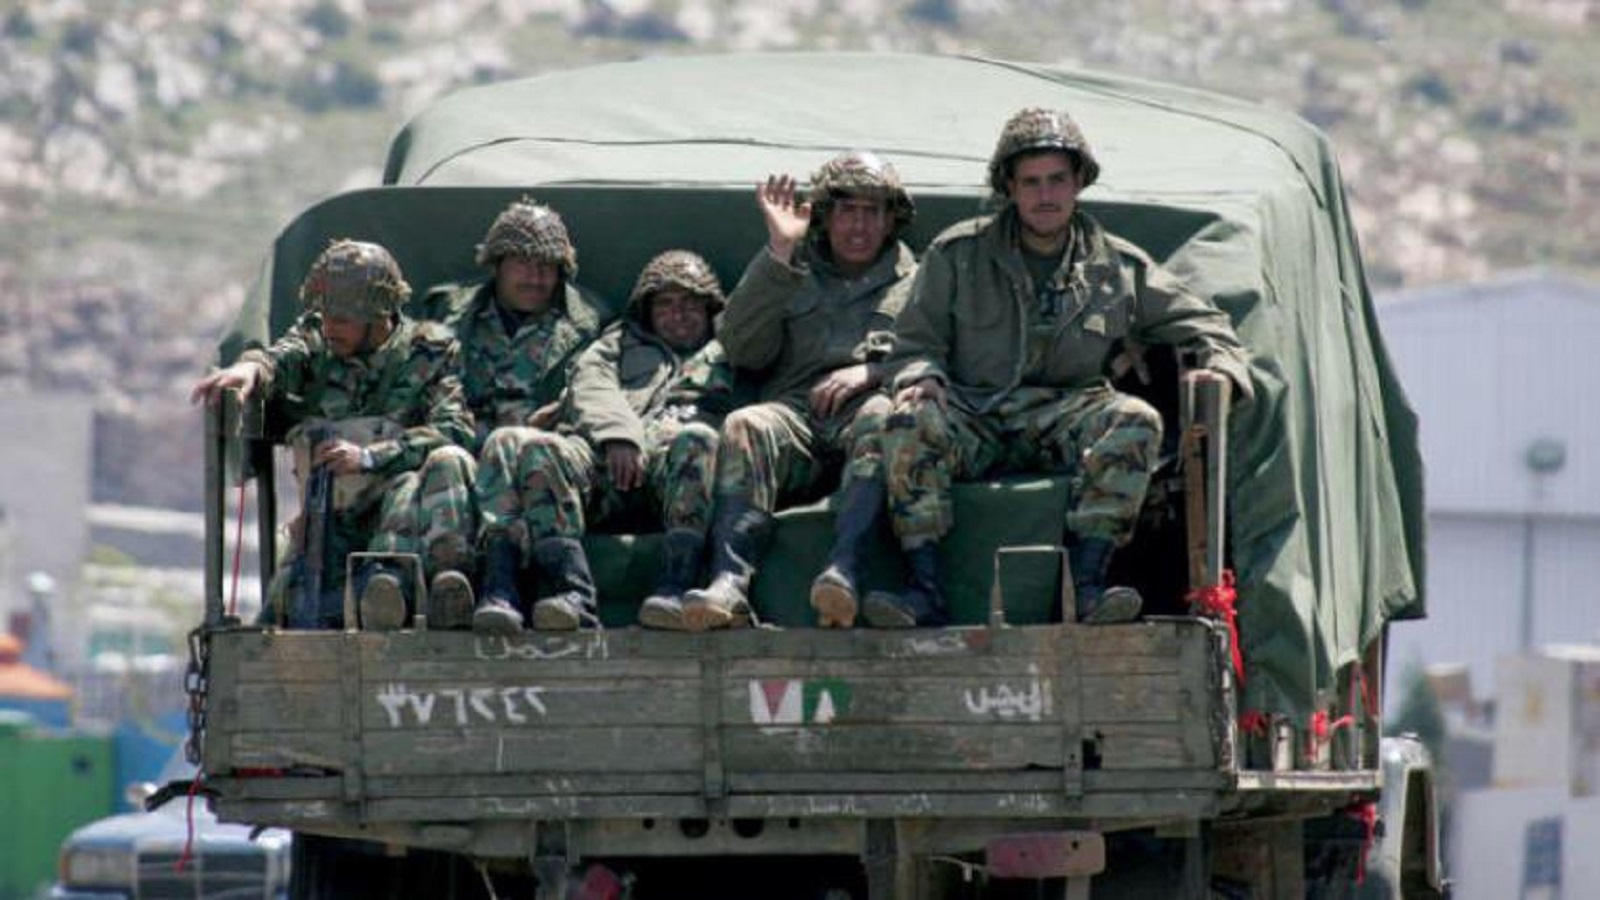 انسحاب الجيش السوري الذي عطّل الحكم وشرّع الطائفية